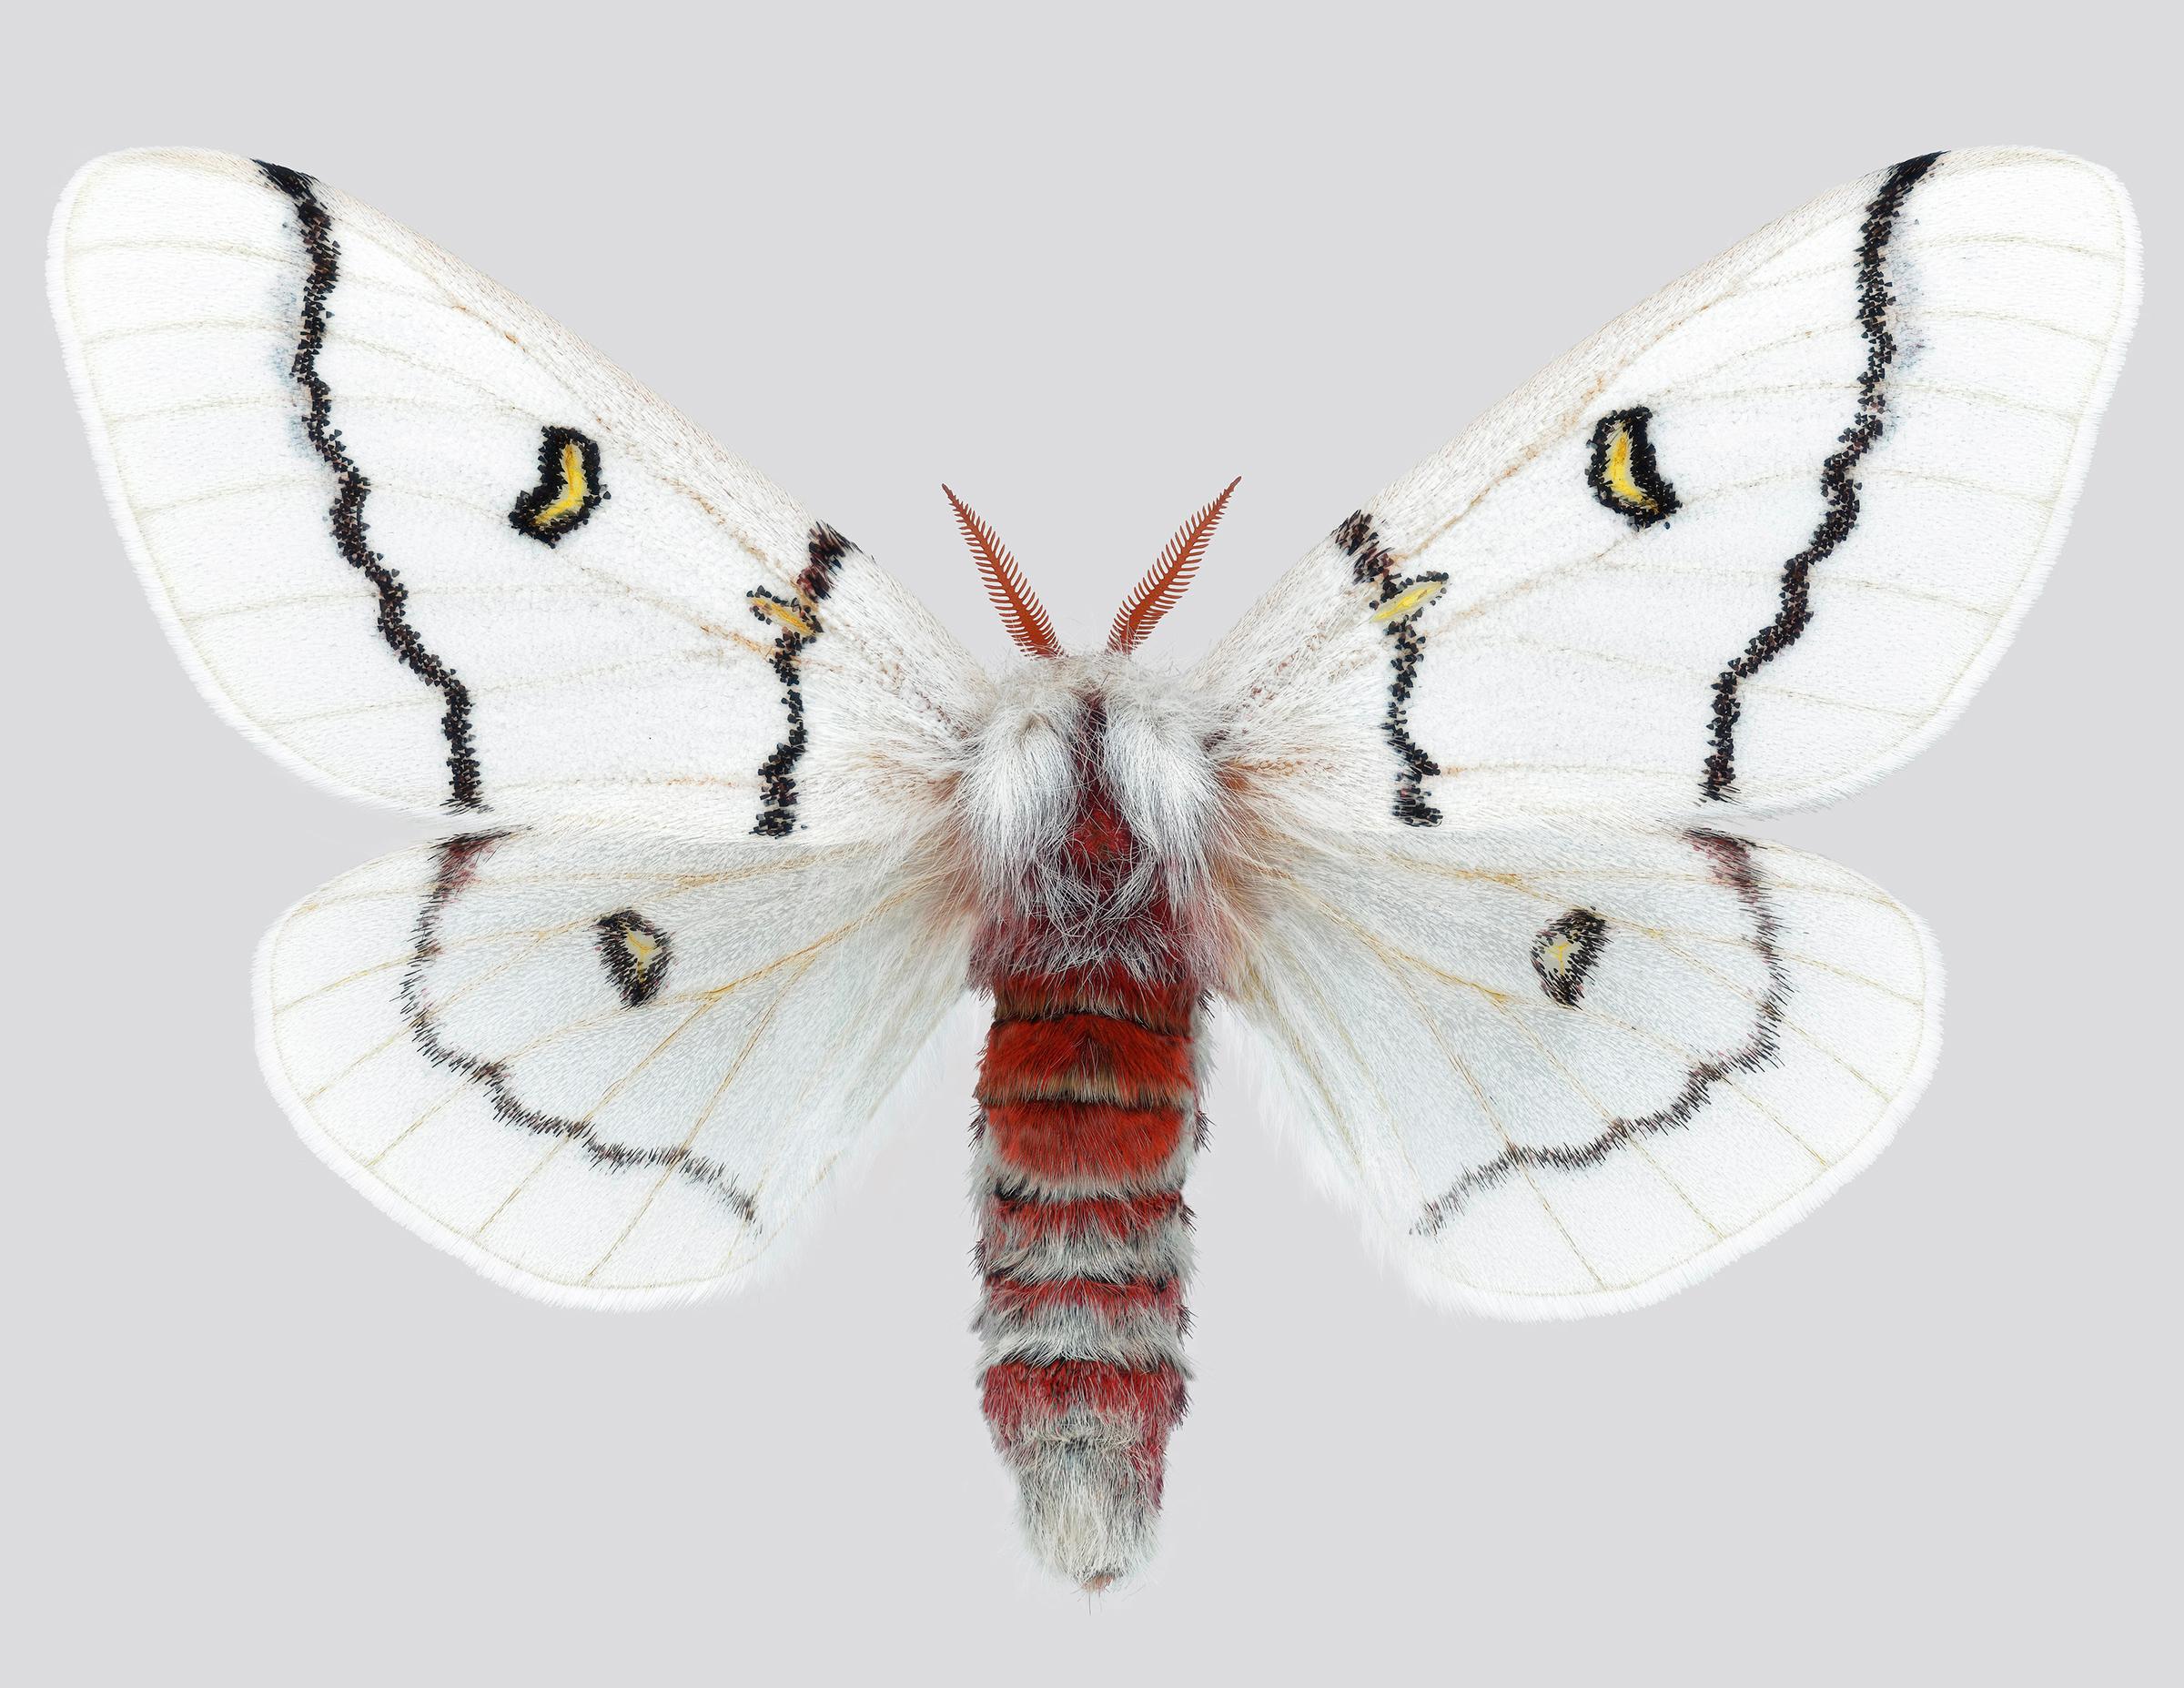 Color Photograph Joseph Scheer - Hemileuca Neomoegeni Papillon de nuit Insecte à rayures blanches, jaunes et noires Ailes Nature